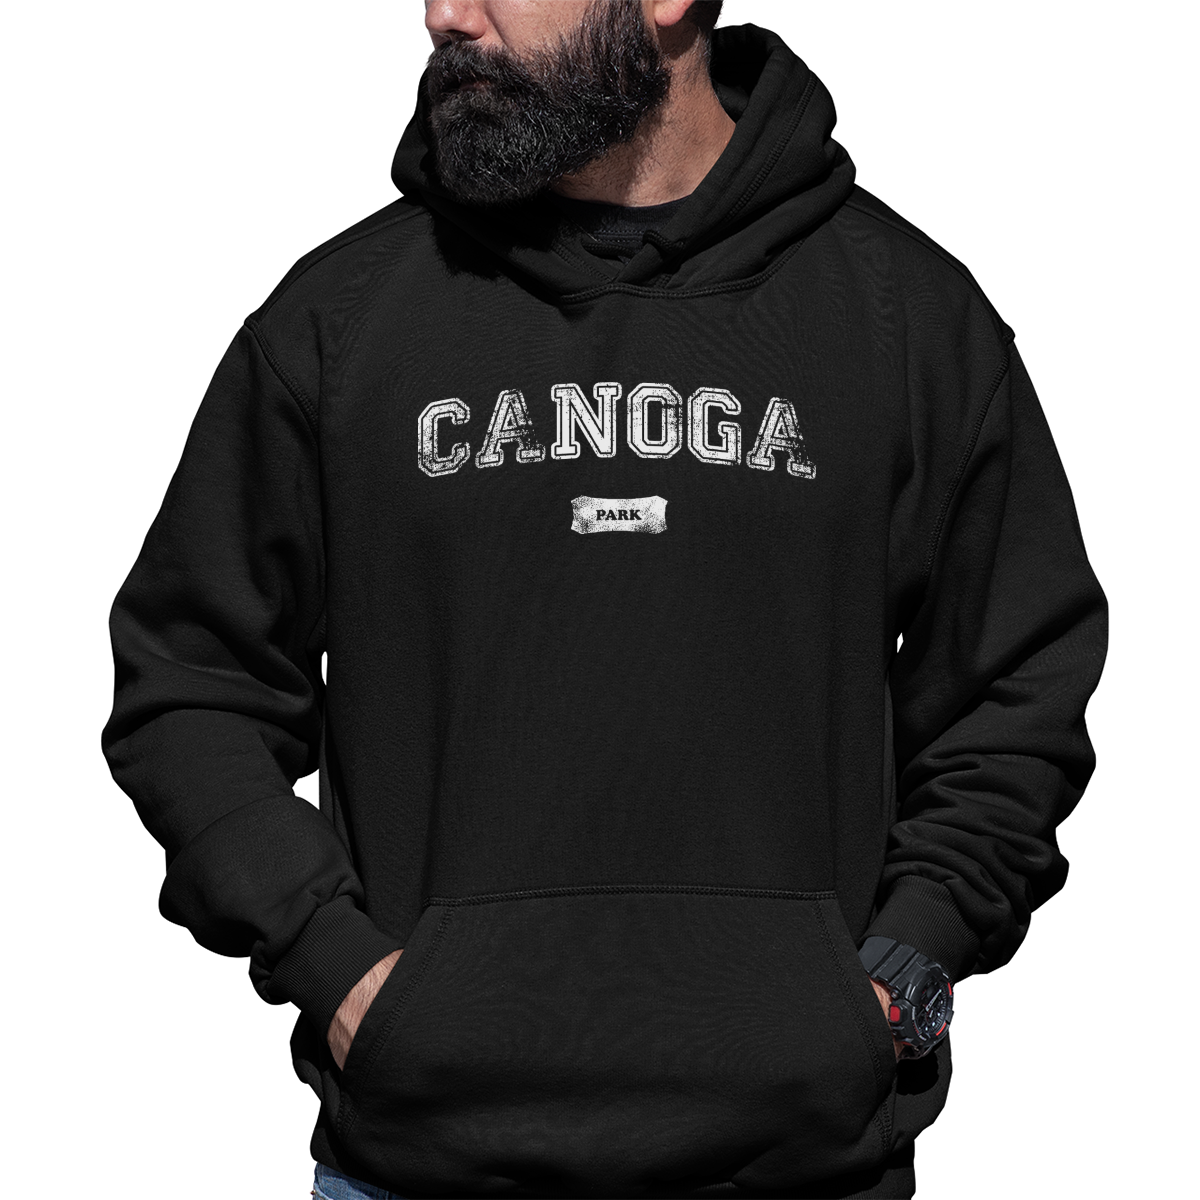 Canoga Park Represent Unisex Hoodie | Black